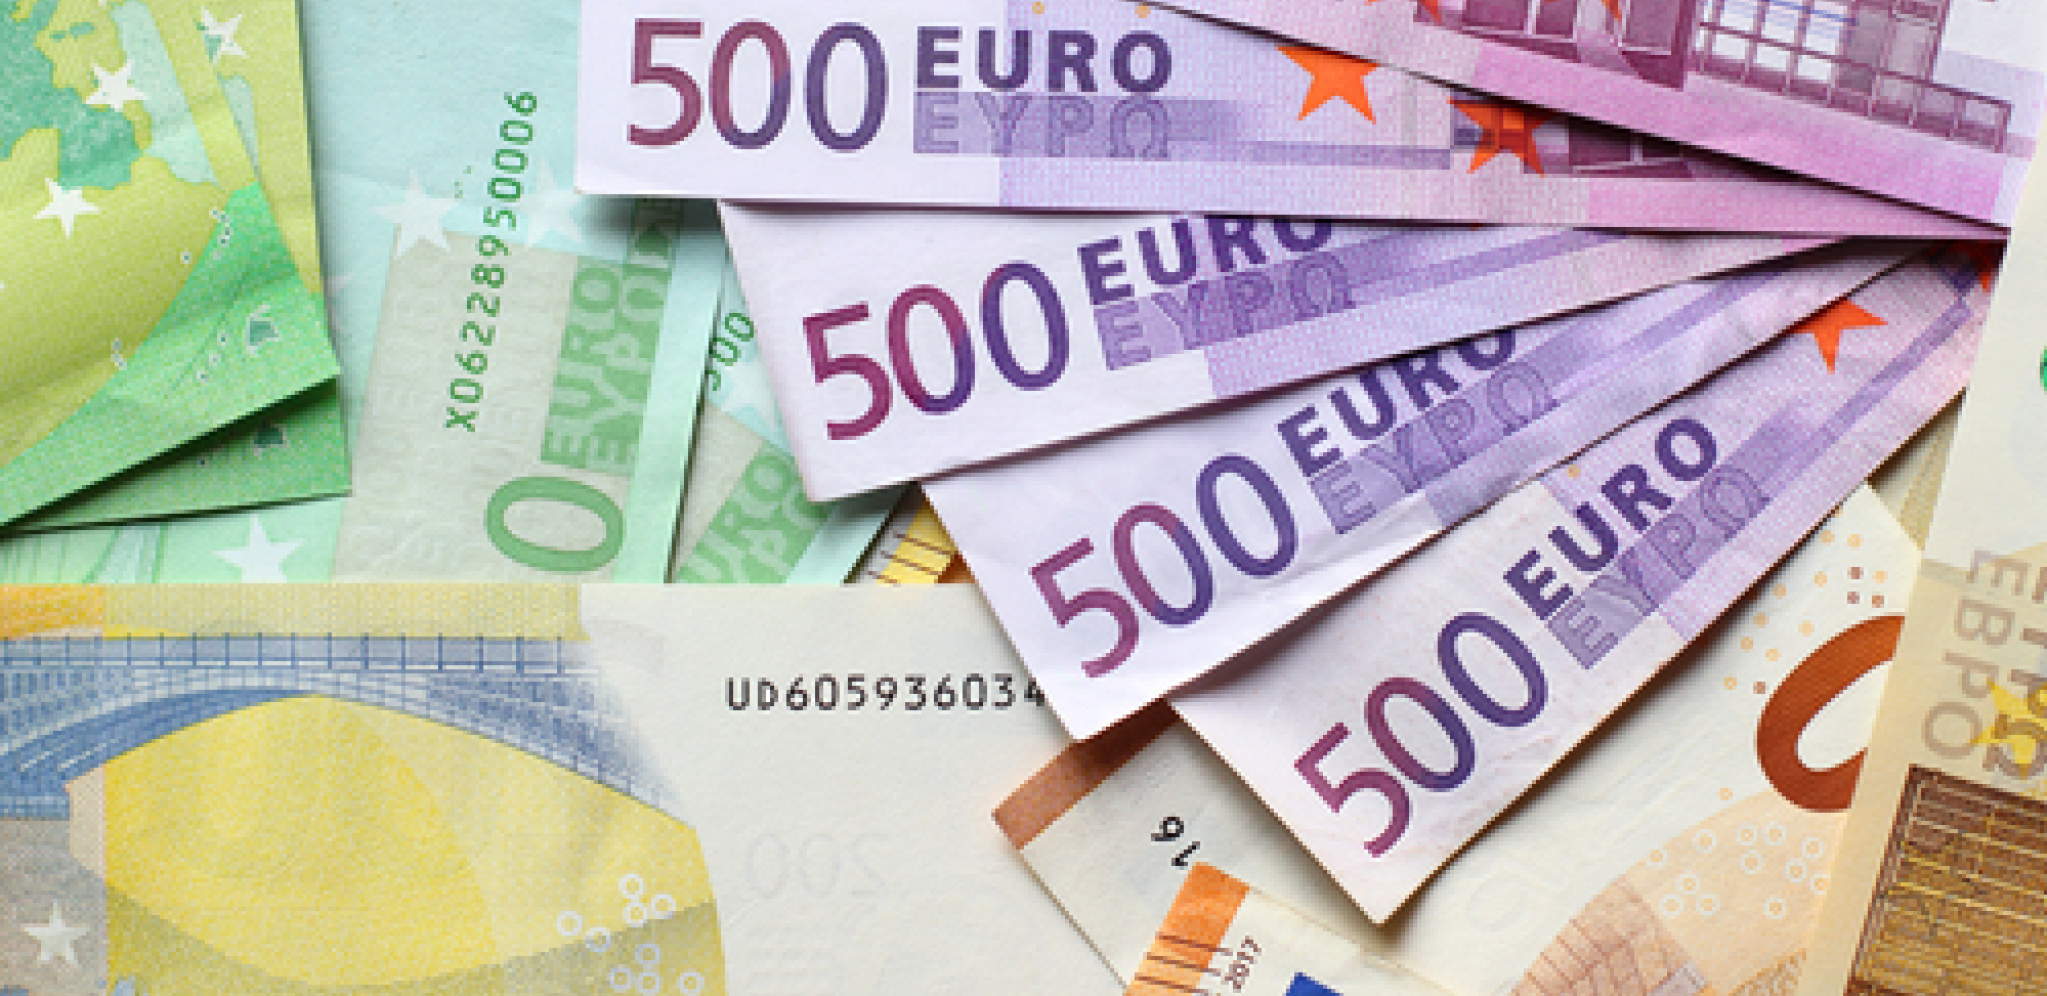 EVRO POTONUO! Objavljena nova kursna lista, Rusija srušila evropsku valutu!